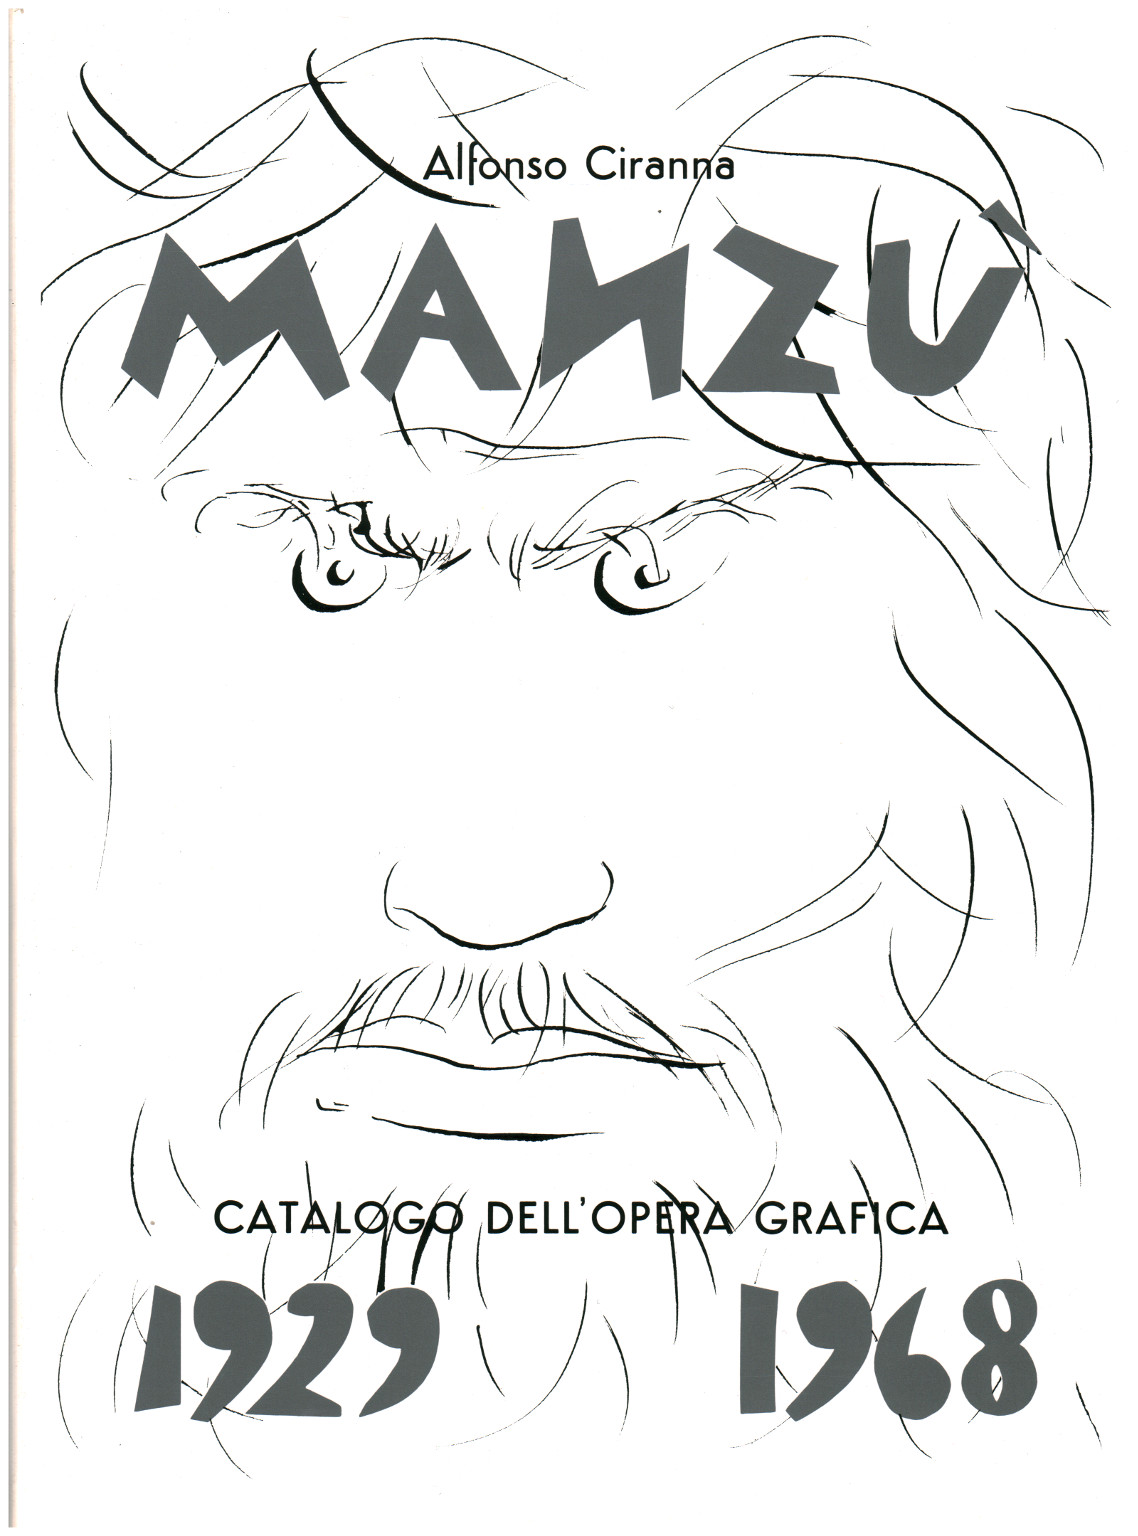 Giacomo Manzù. Catalog of works%2, Giacomo Manzù. Catalog of works%2, Giacomo Manzù. Catalog of works%2, Giacomo Manzù. Catalog of works%2